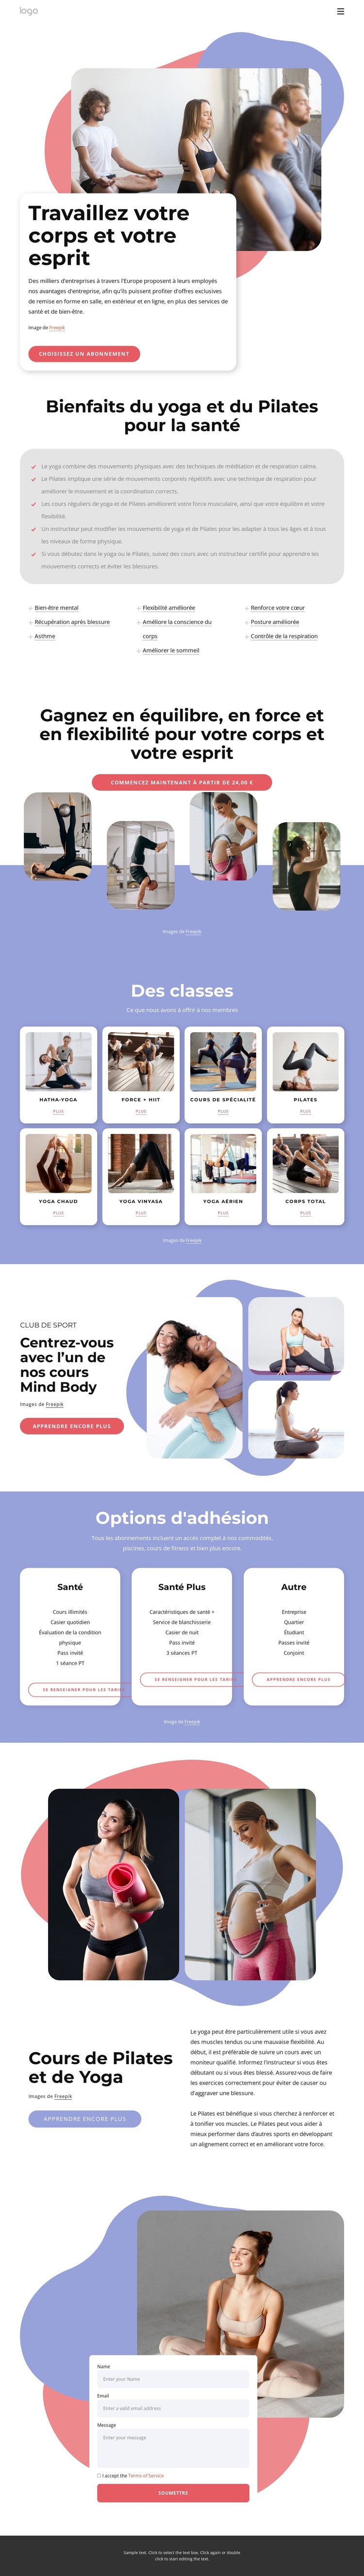 Cours de Pilates et de yoga Modèle de site Web